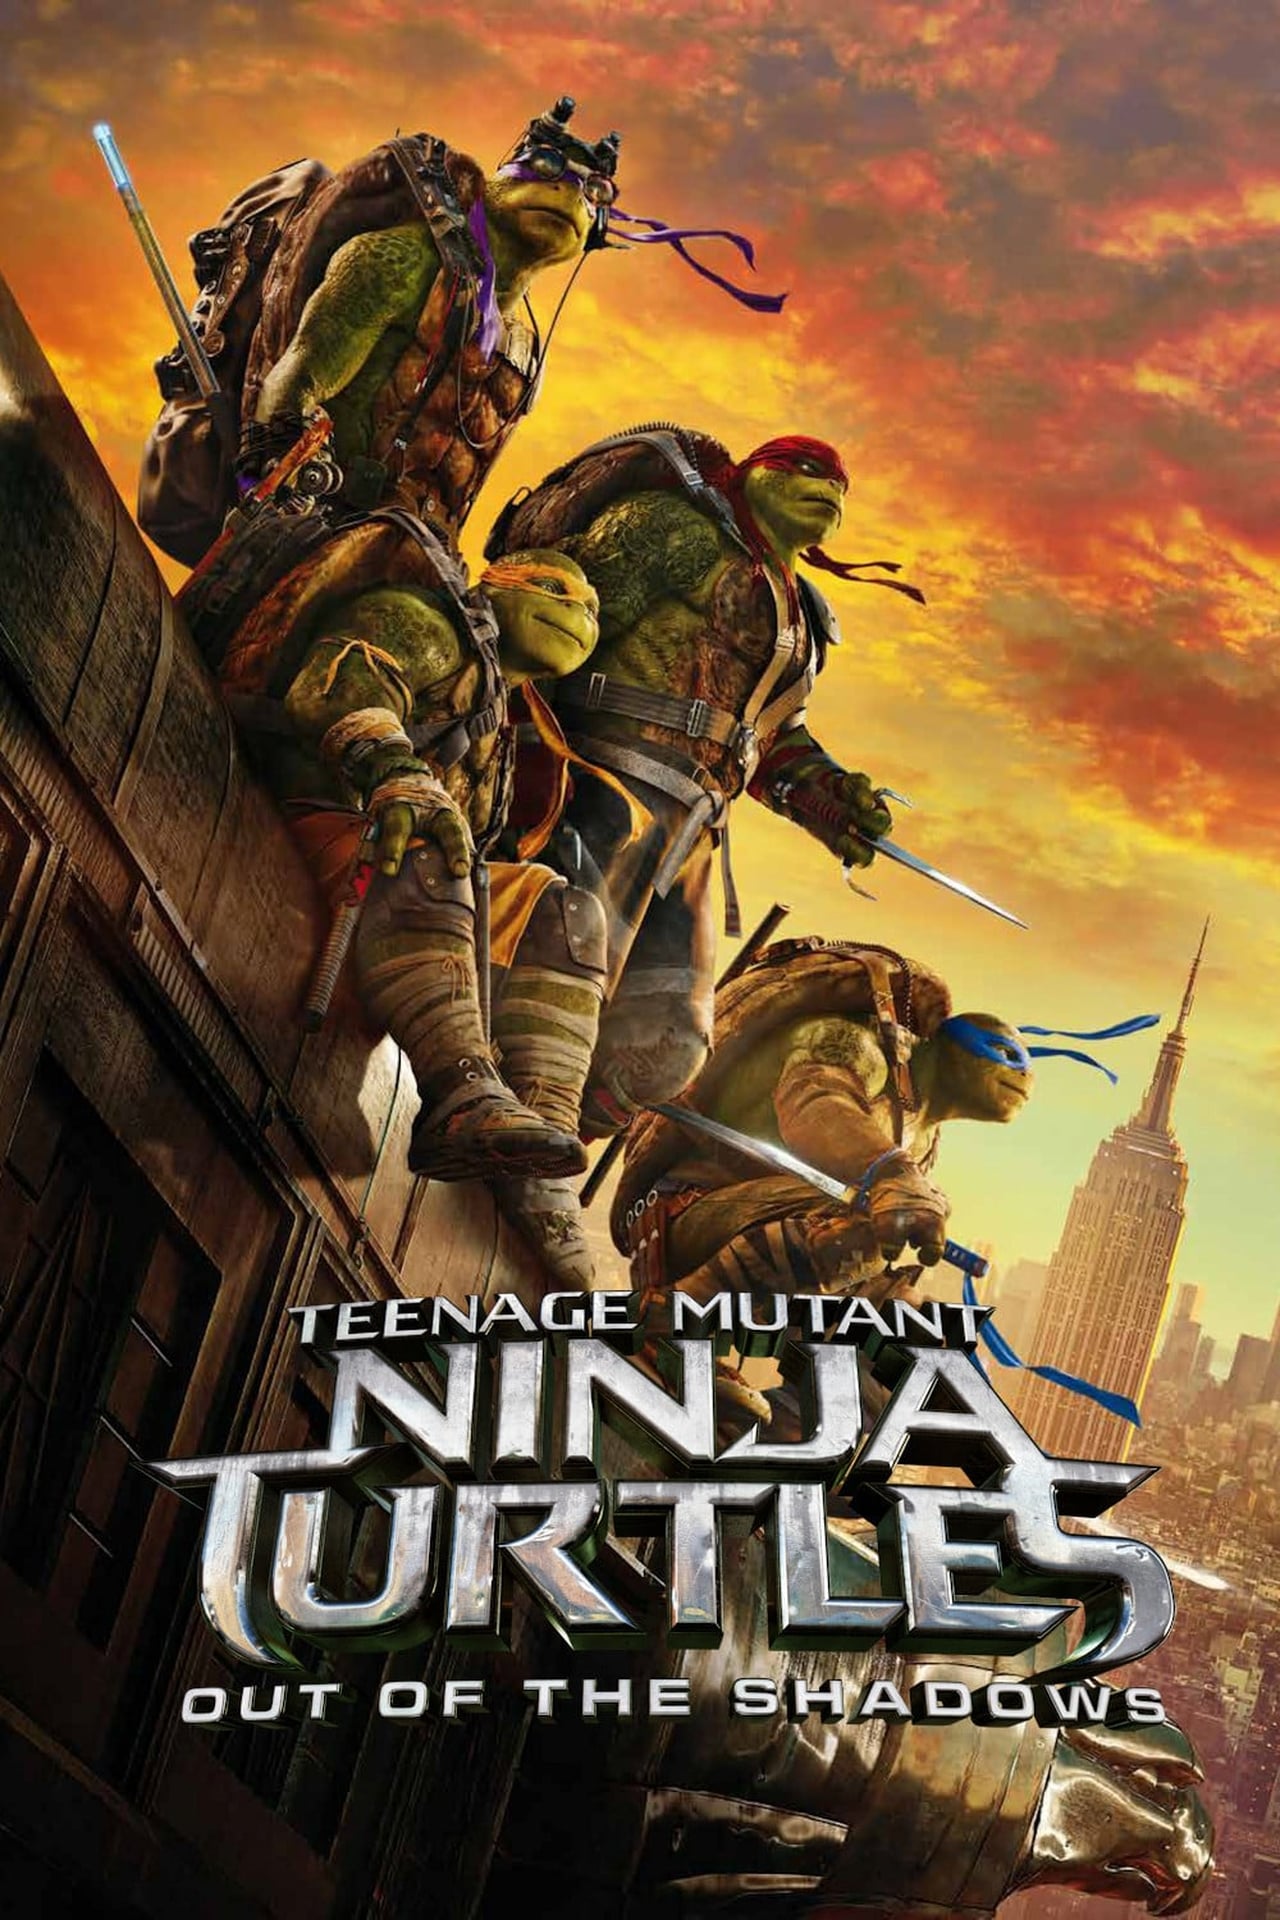 Teenage Mutant Ninja Turtles 2 on Netflix